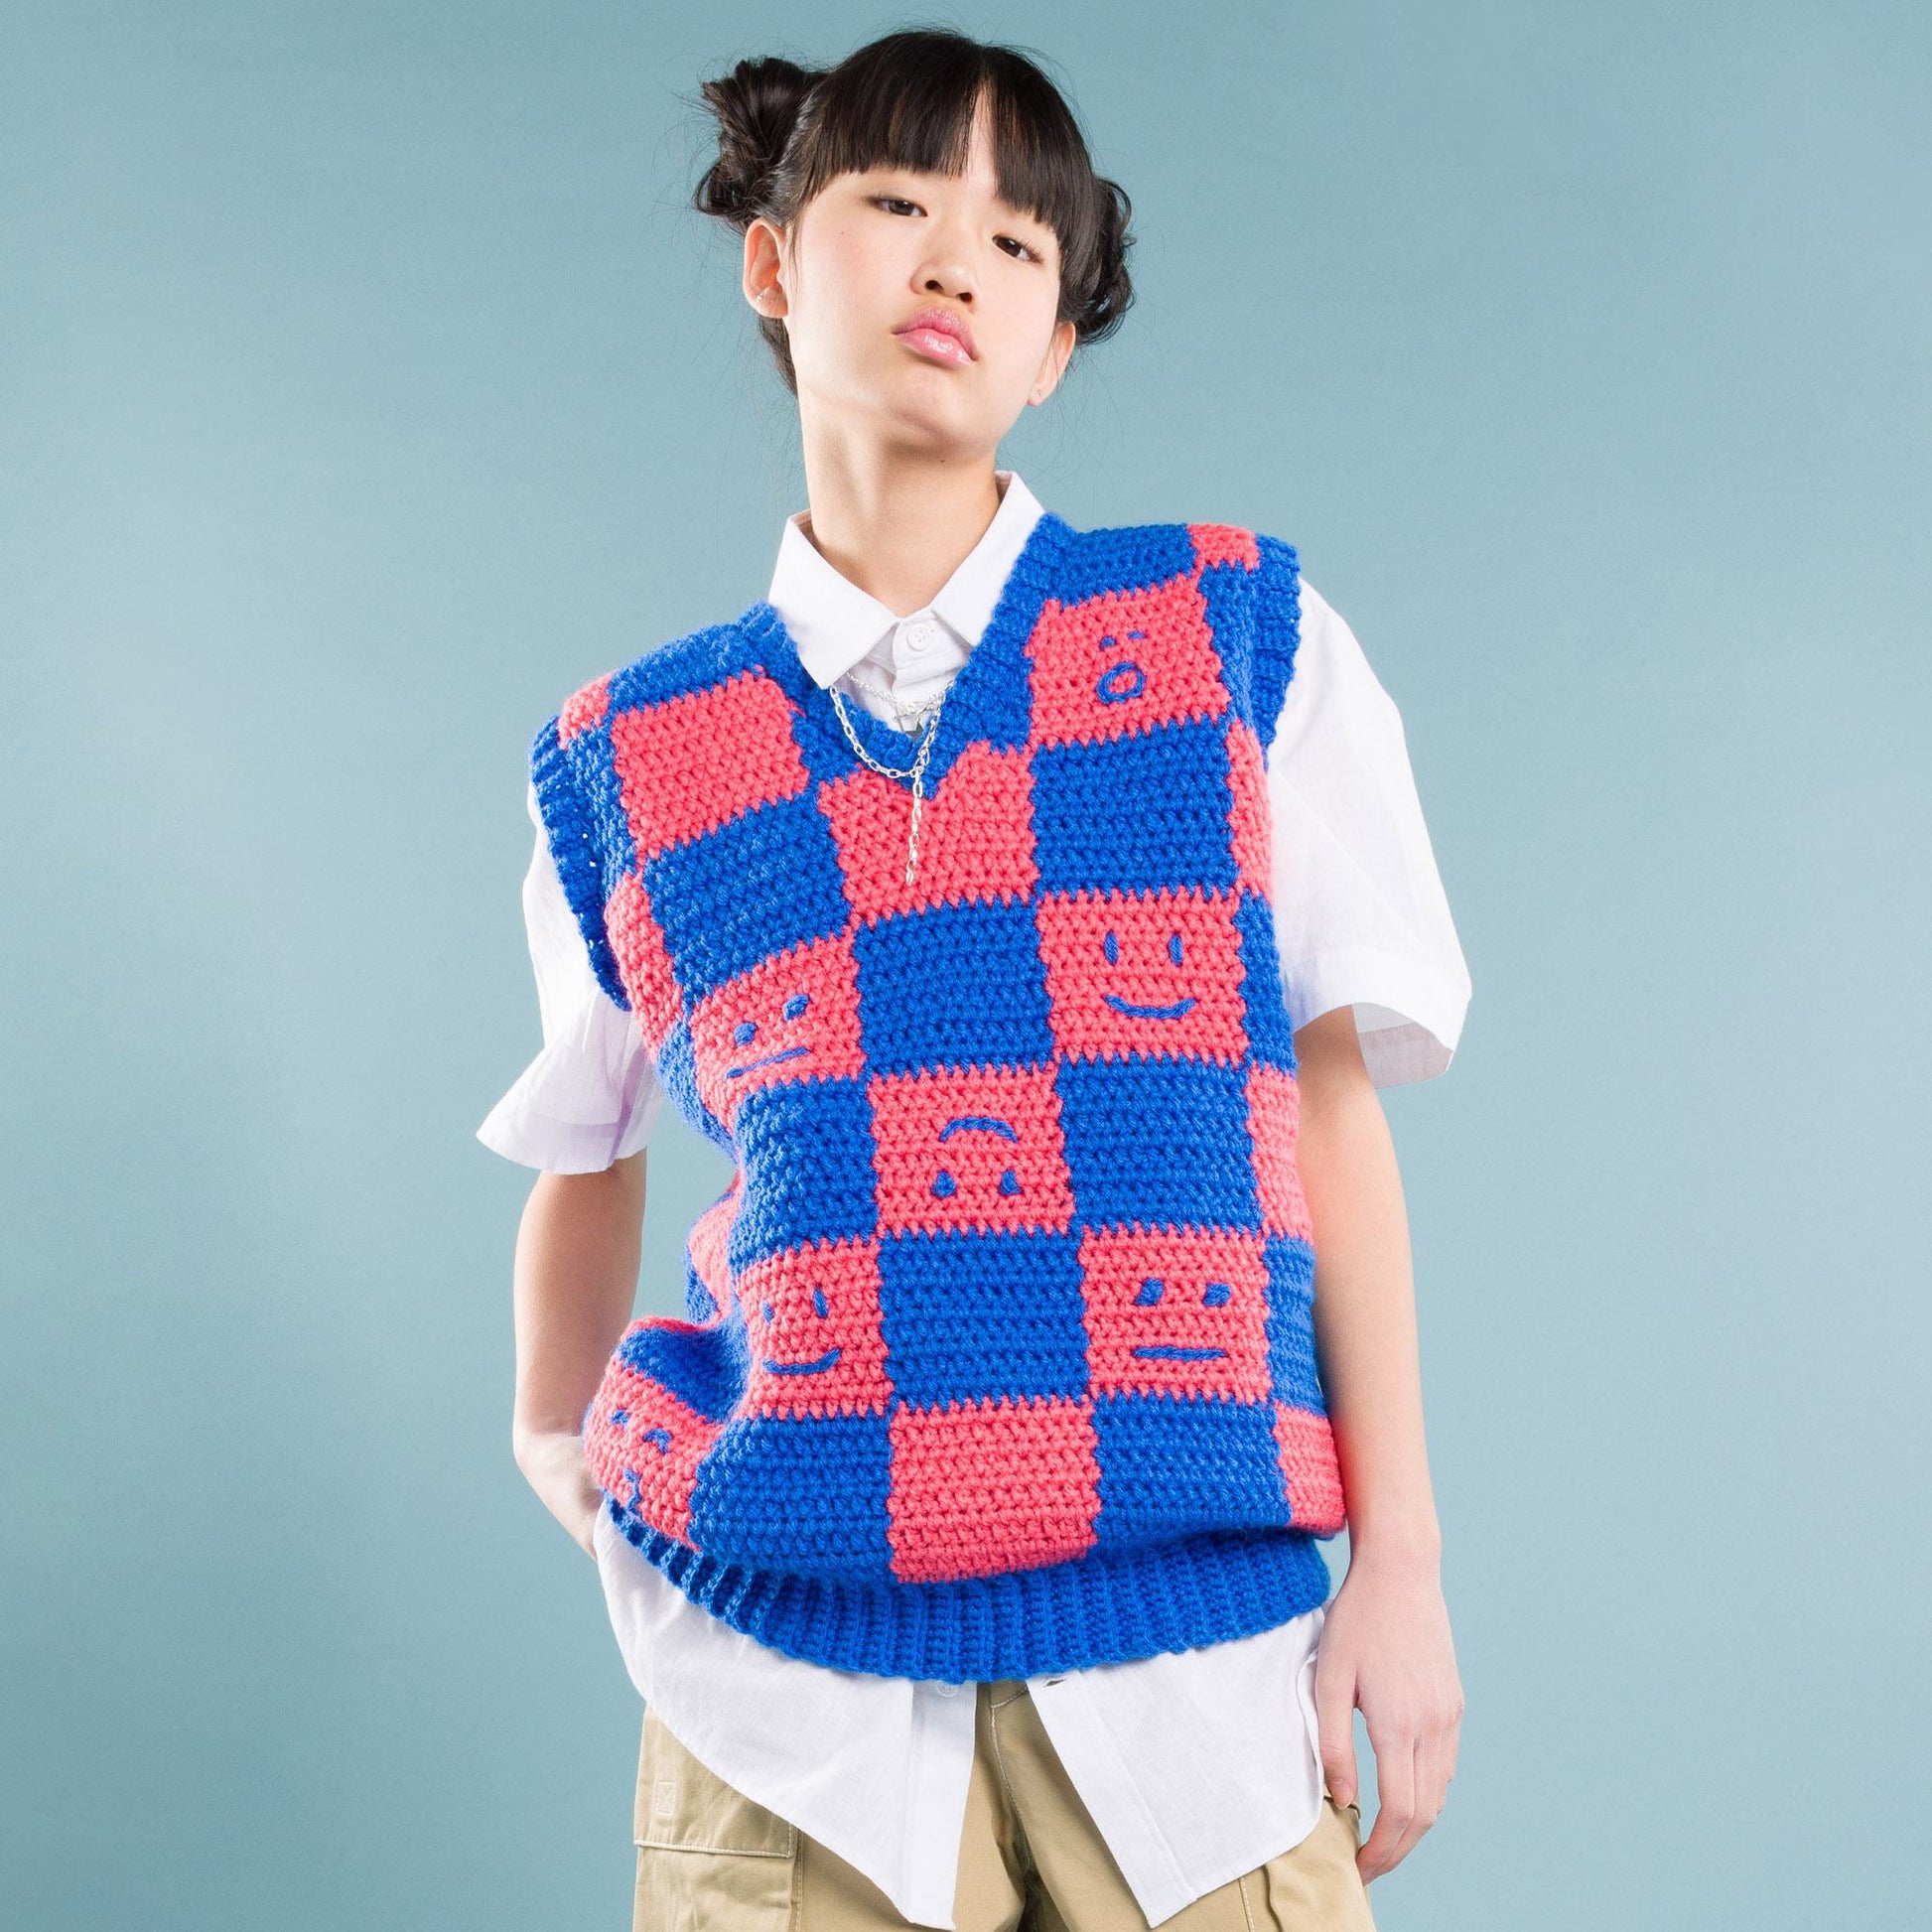 Free Red Heart Crochet Checkerboard Mood Sweater Vest Pattern